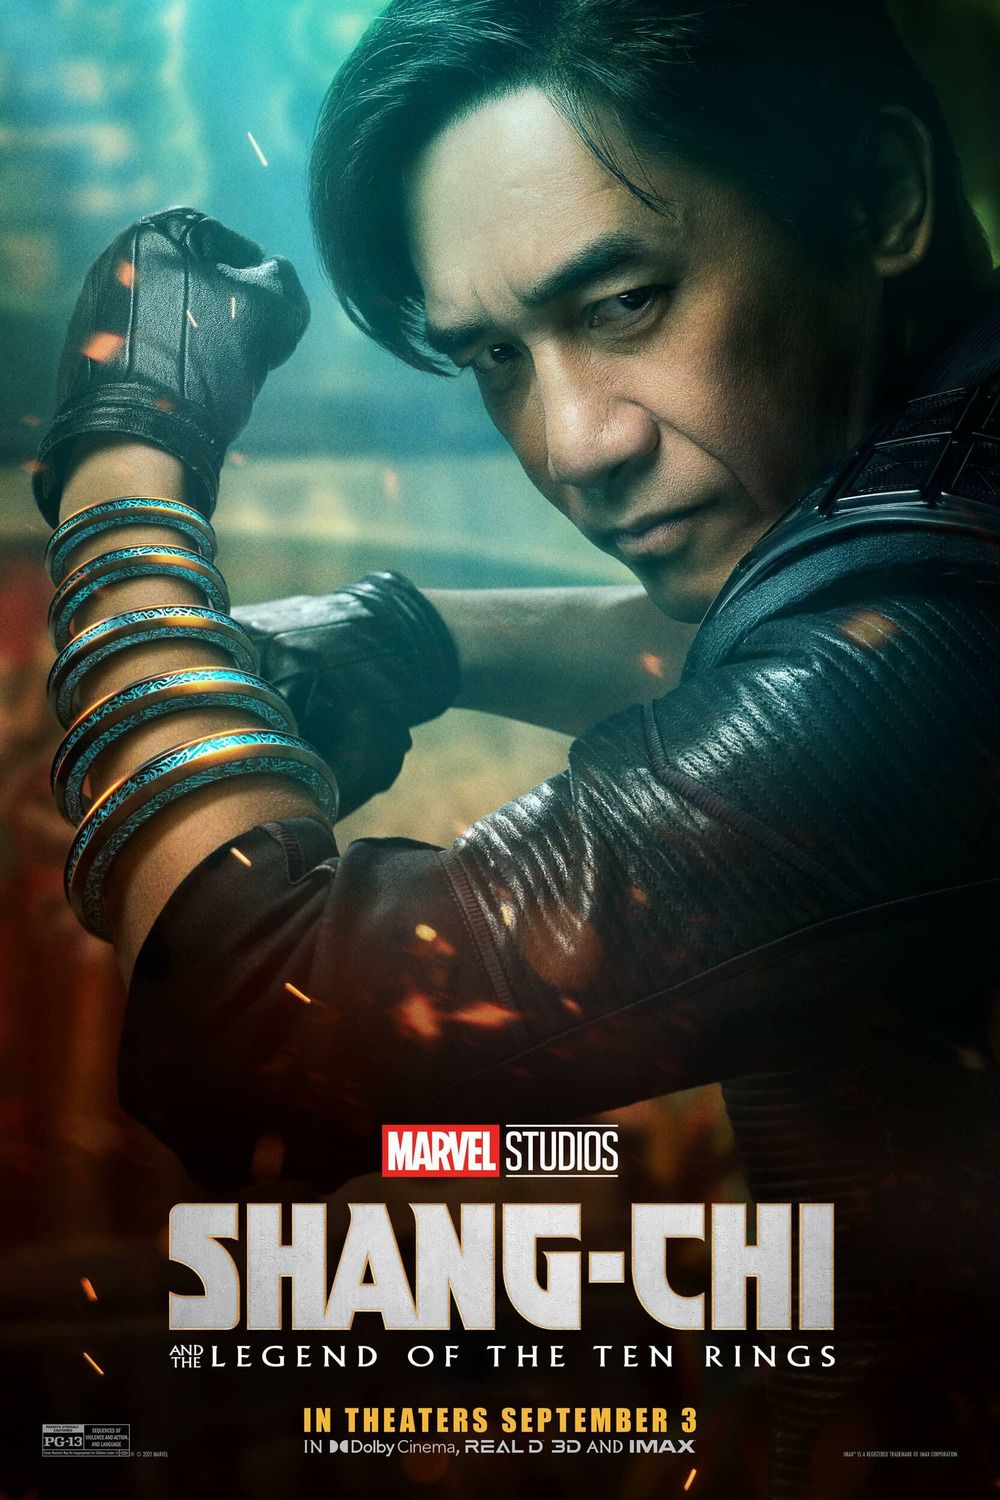 Shang Chi Character Poster Image #3